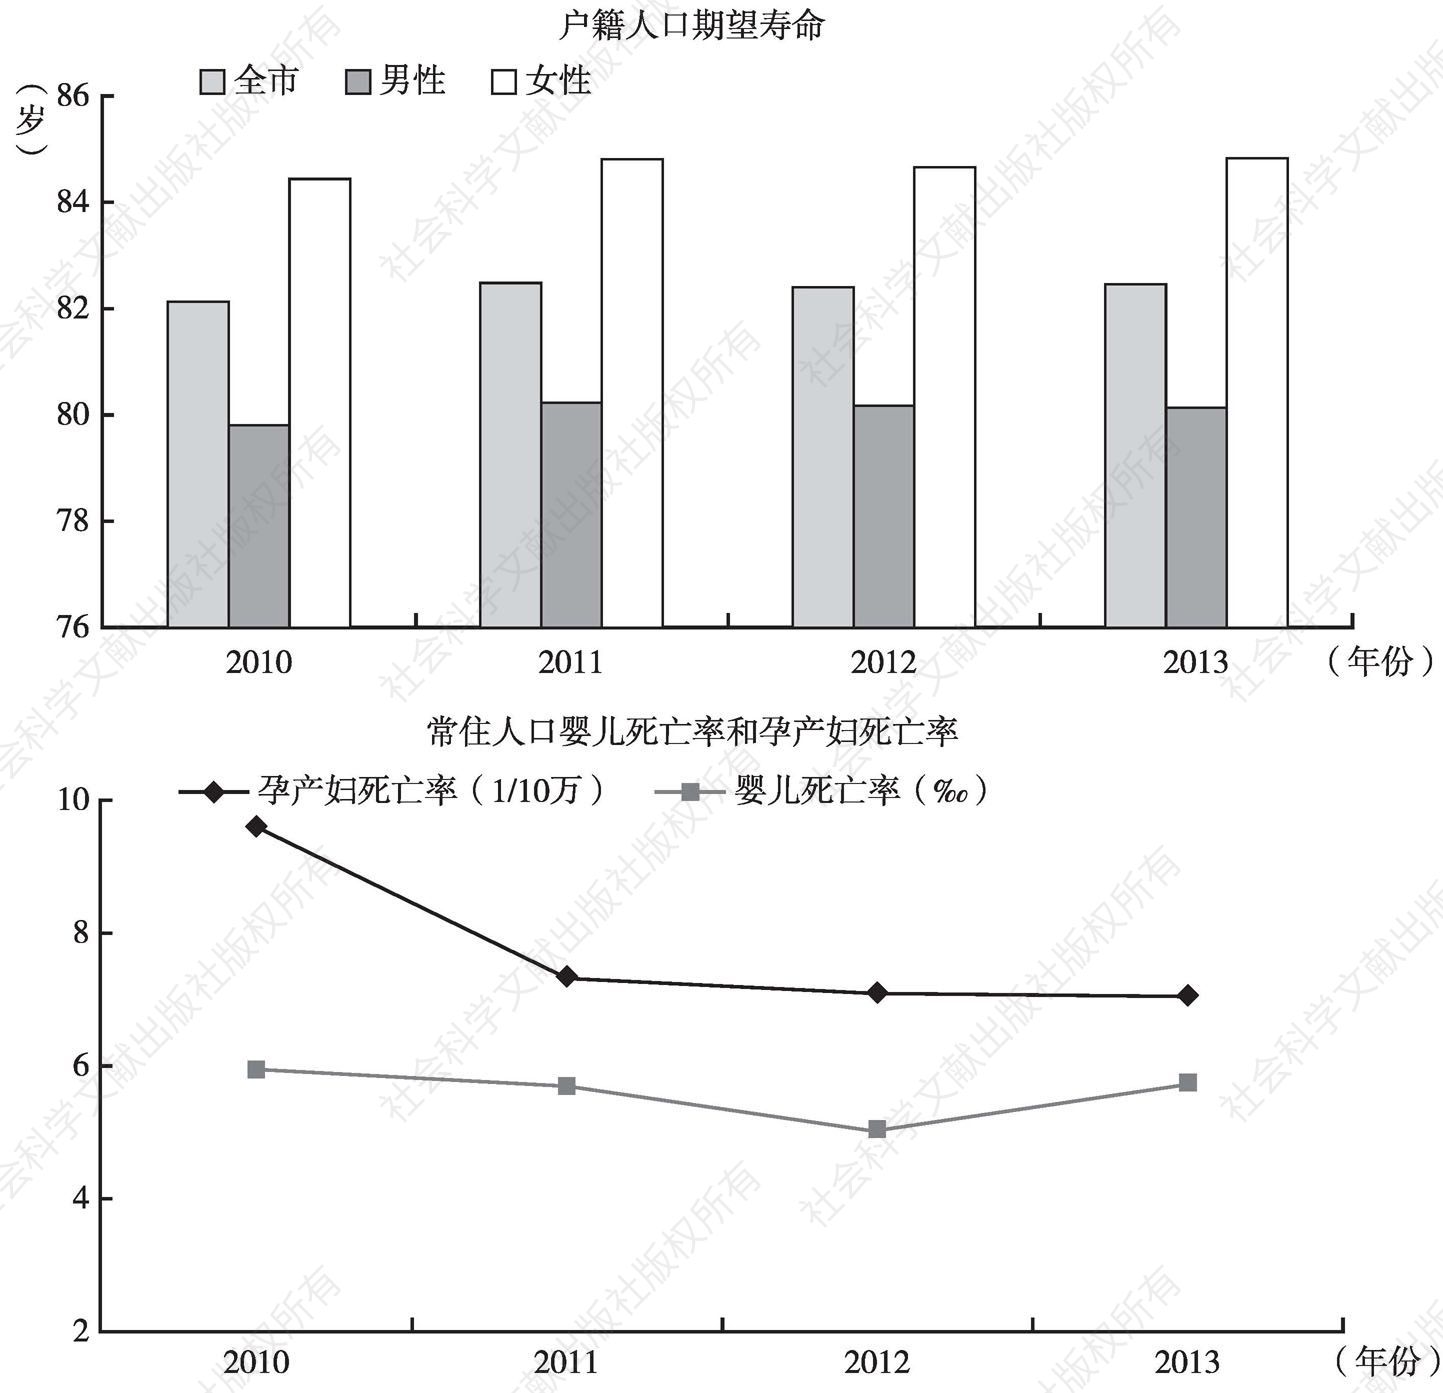 图1 上海市人口期望寿命、婴儿死亡率和孕产妇死亡率